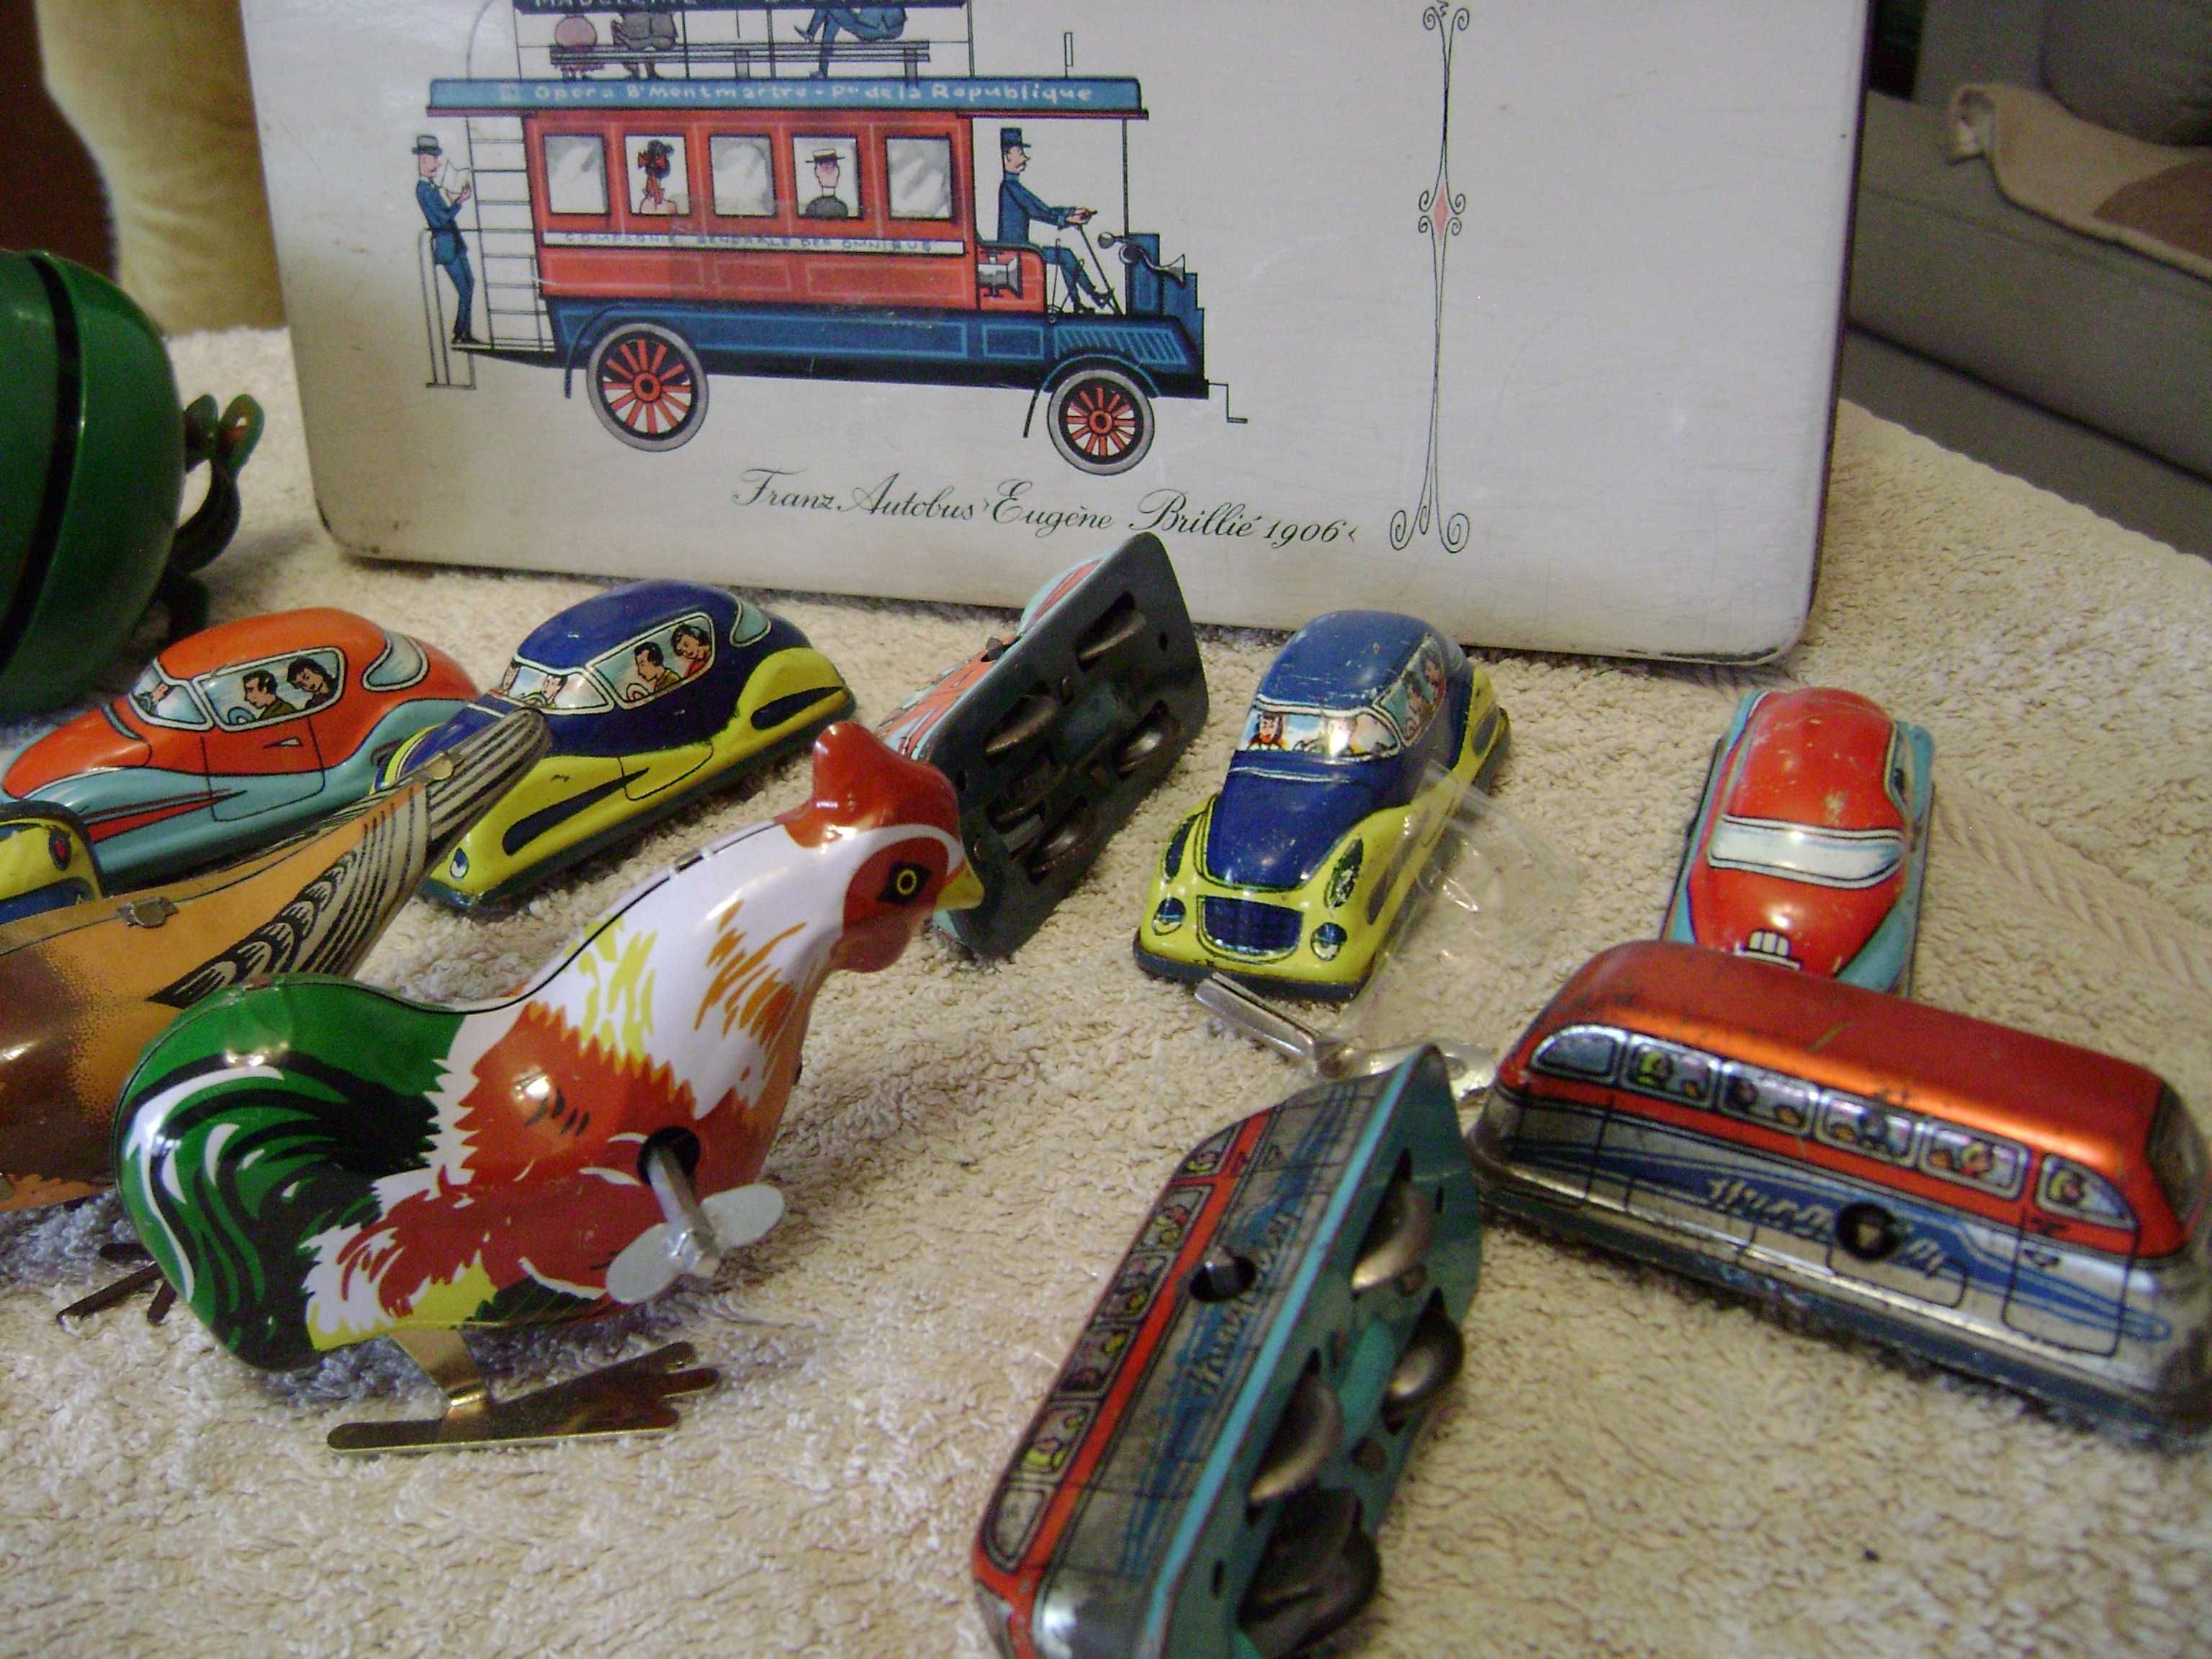 Stare blaszane zabawki ; autobusy  , ptaszki  , autka , puszka